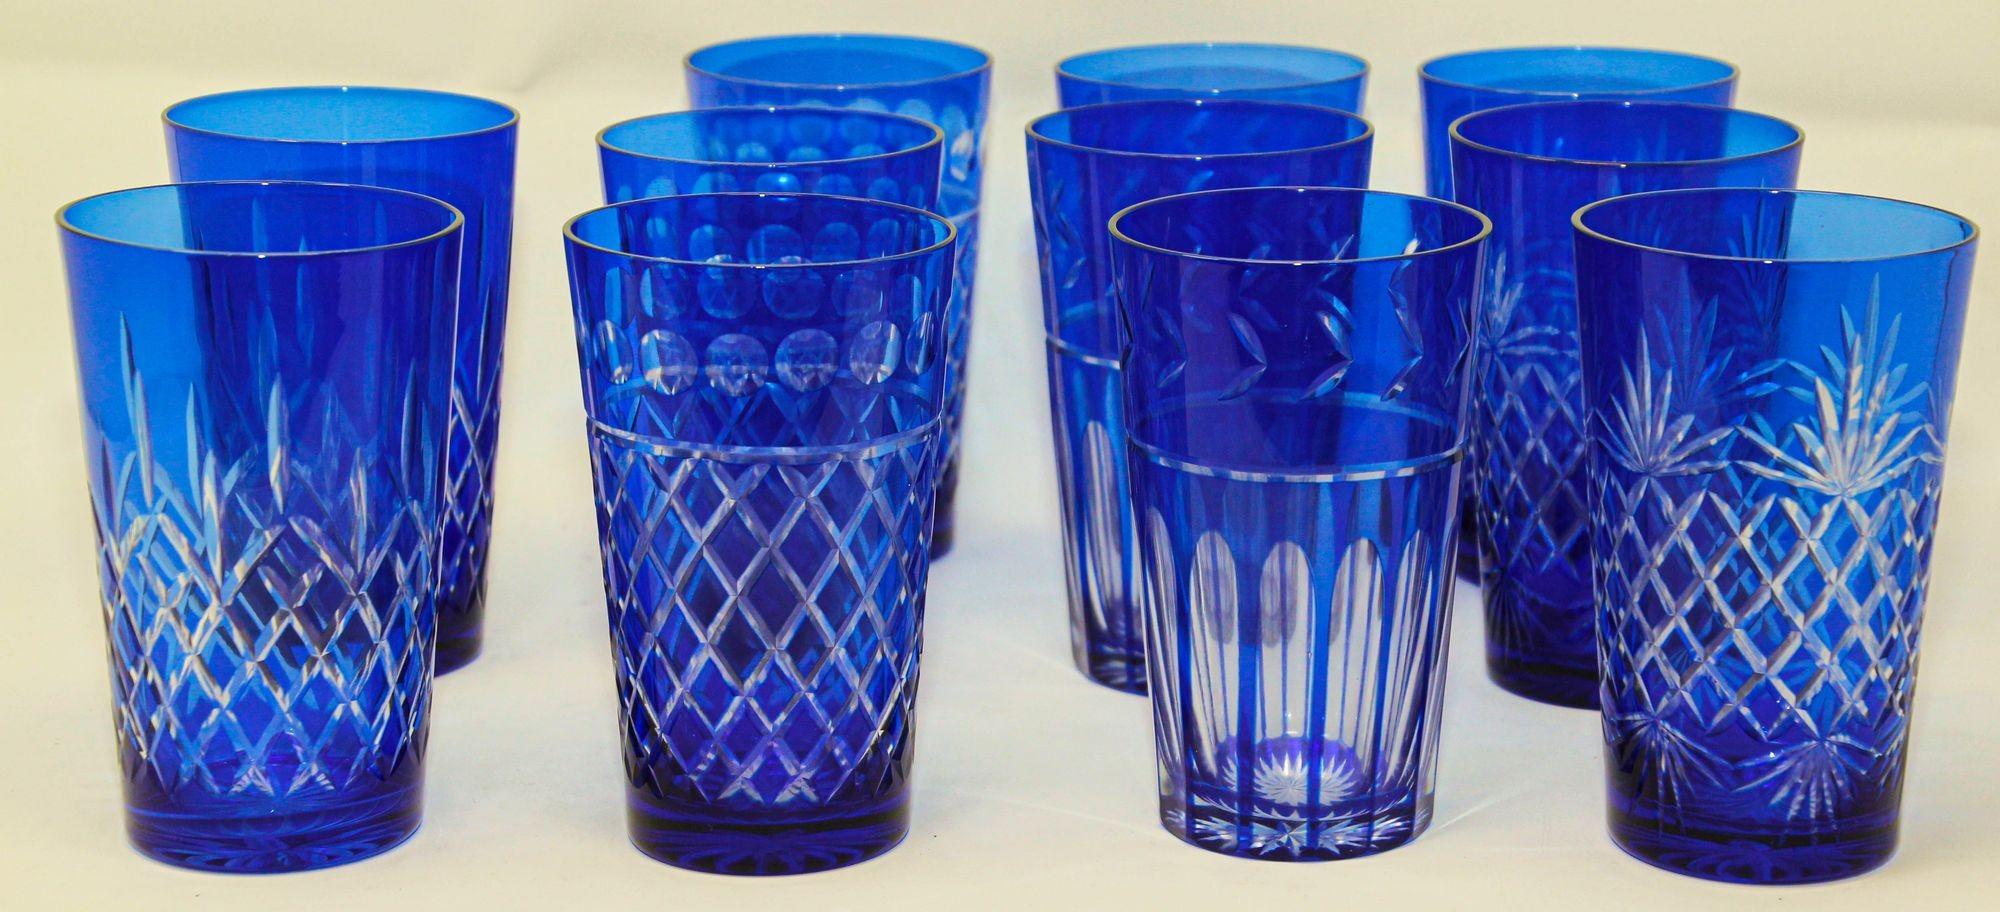 blue drinking glasses vintage